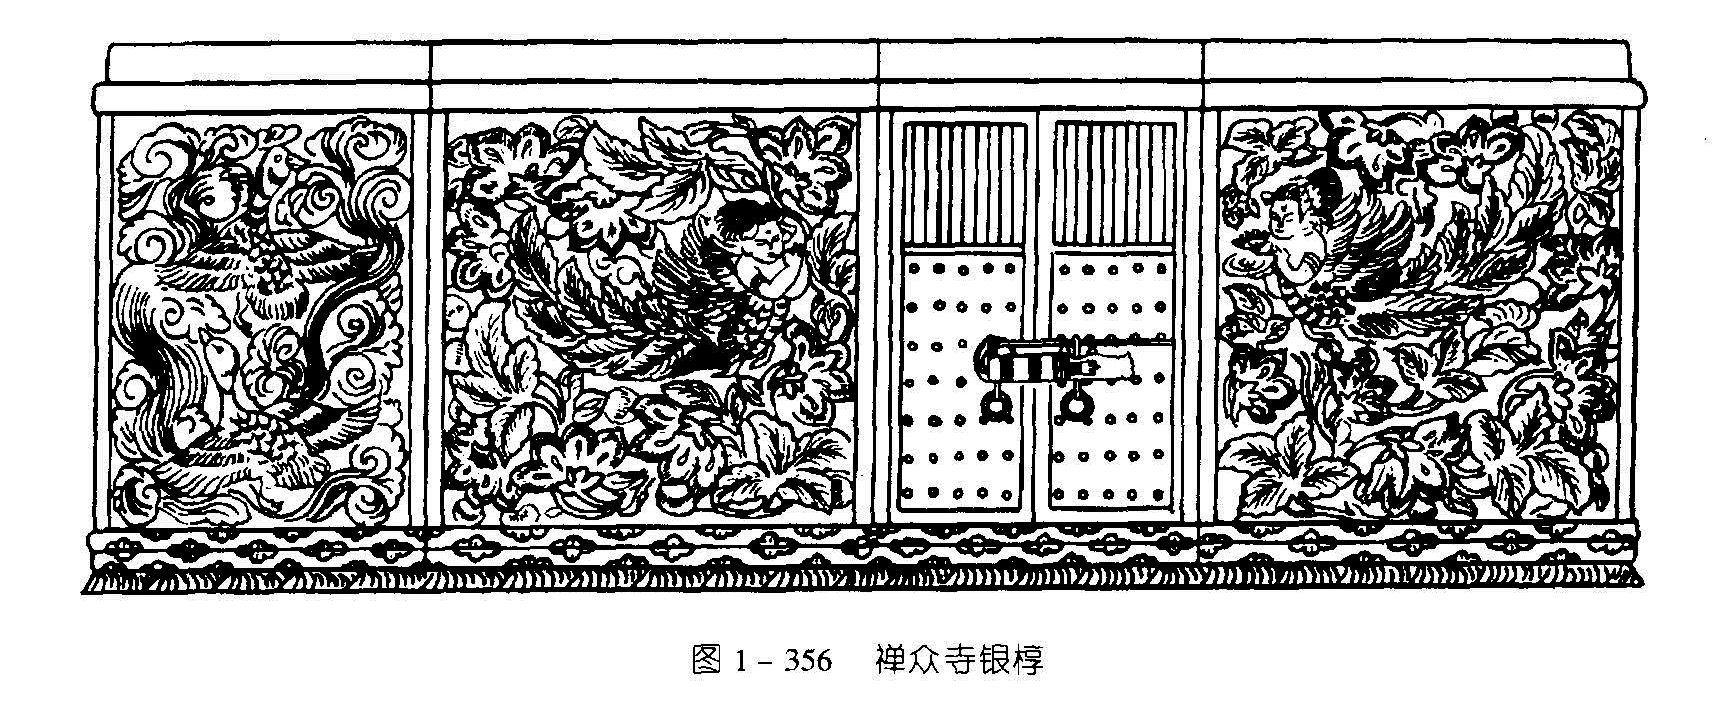  图1-357 禪众寺金棺